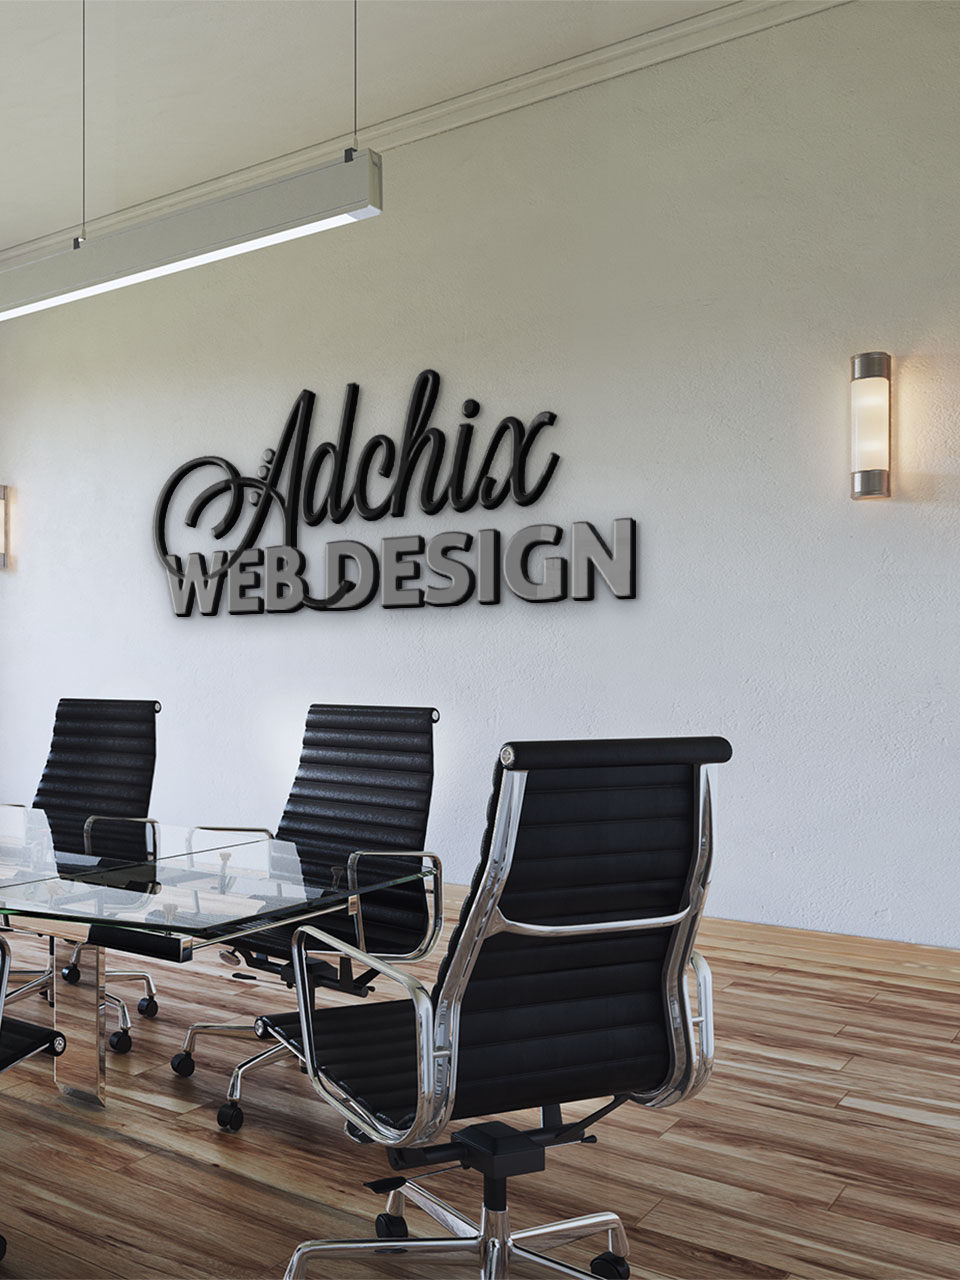 Adchix Web and Graphic design